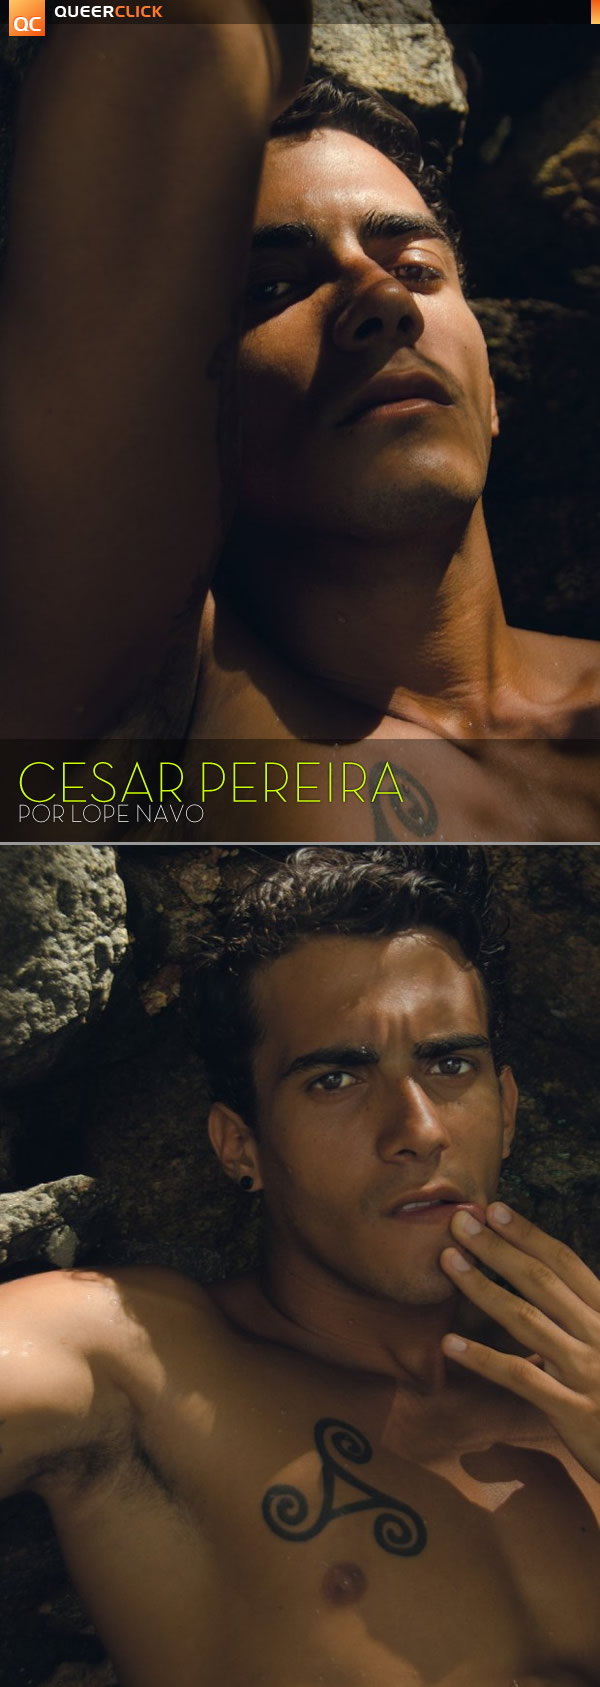 Lope Navo: Cesar Pereira